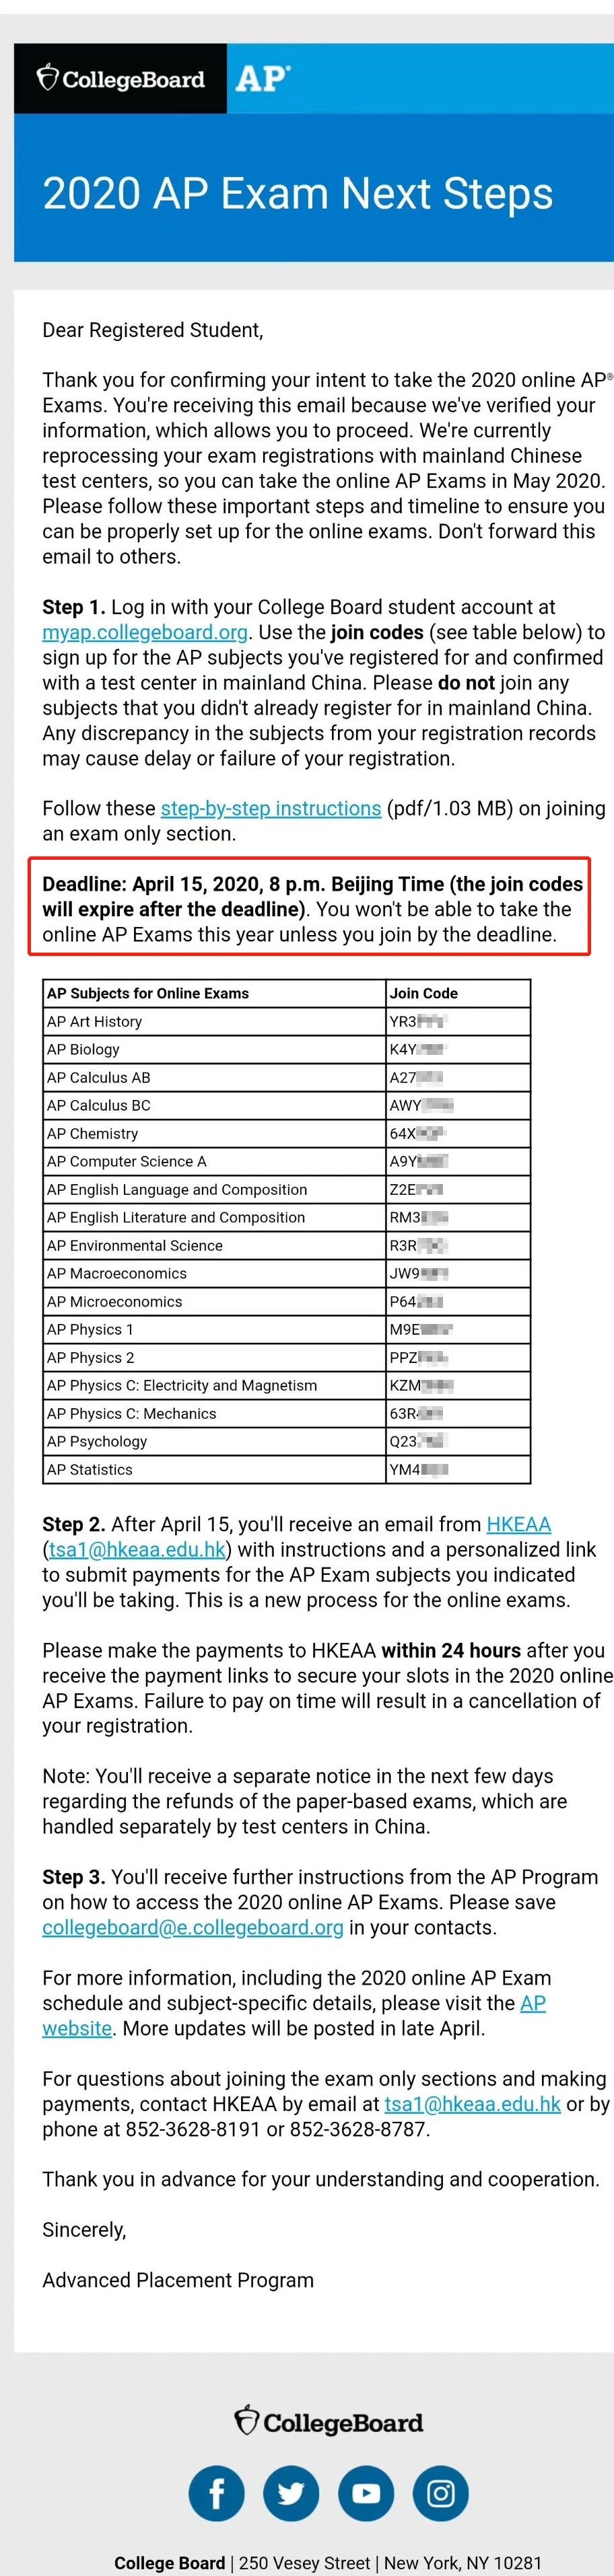 CB官方:中国大陆AP考生需在4月15日前激活考试资格！